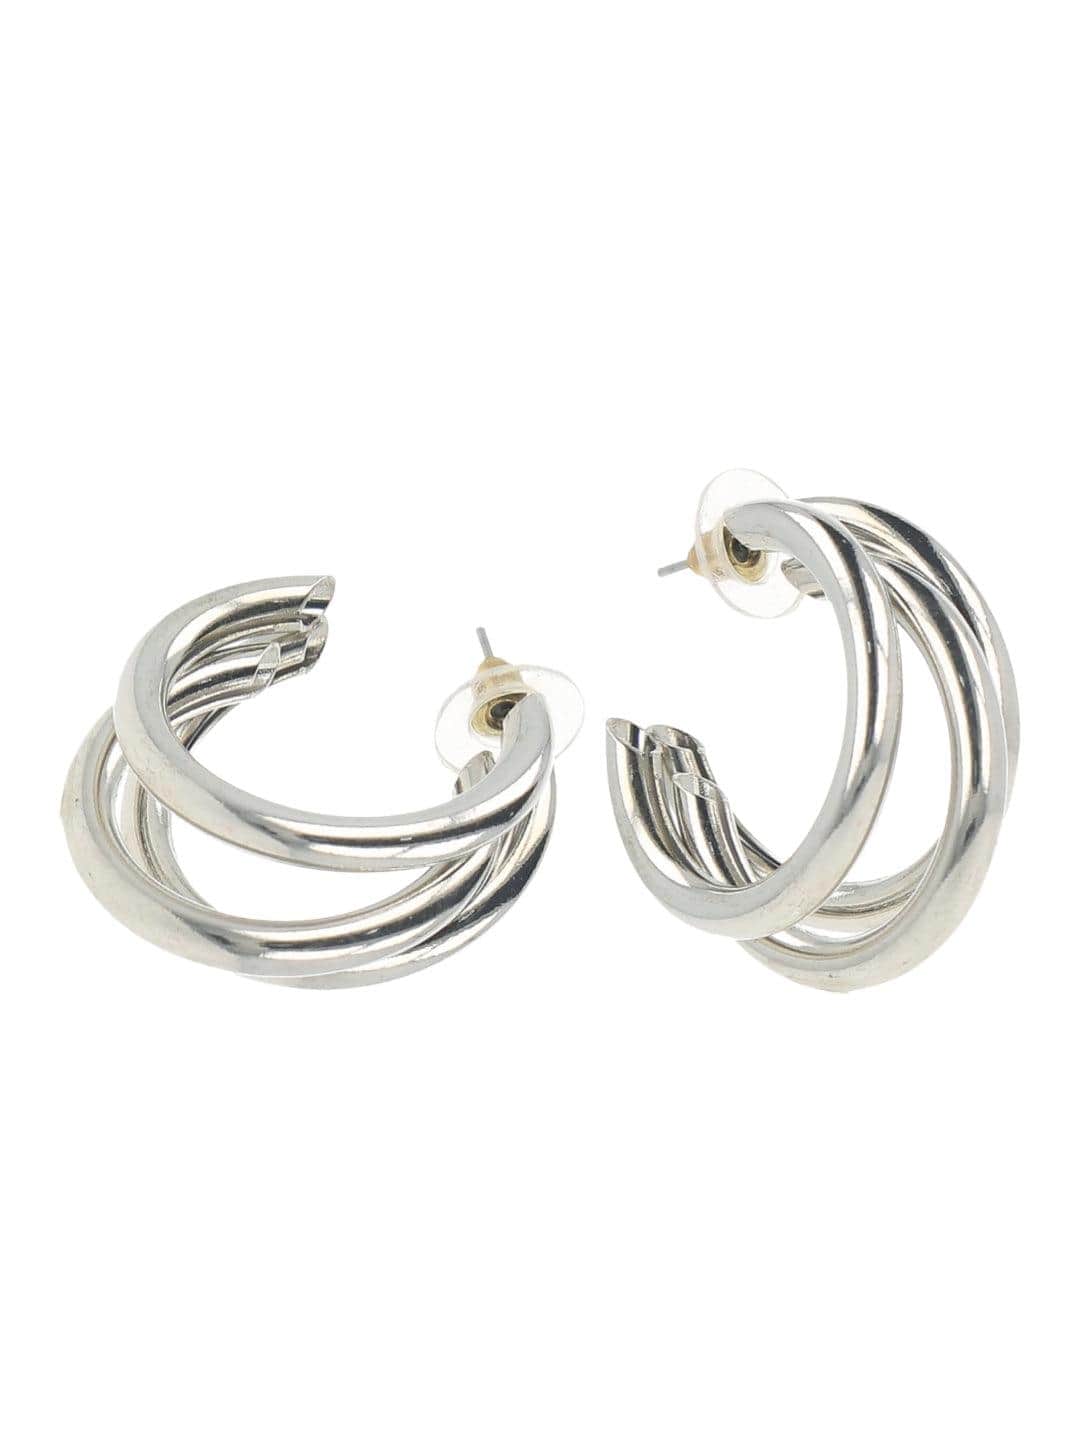 Ishhaara Silver Kusha Kapila Silver Triple Hoop Earrings